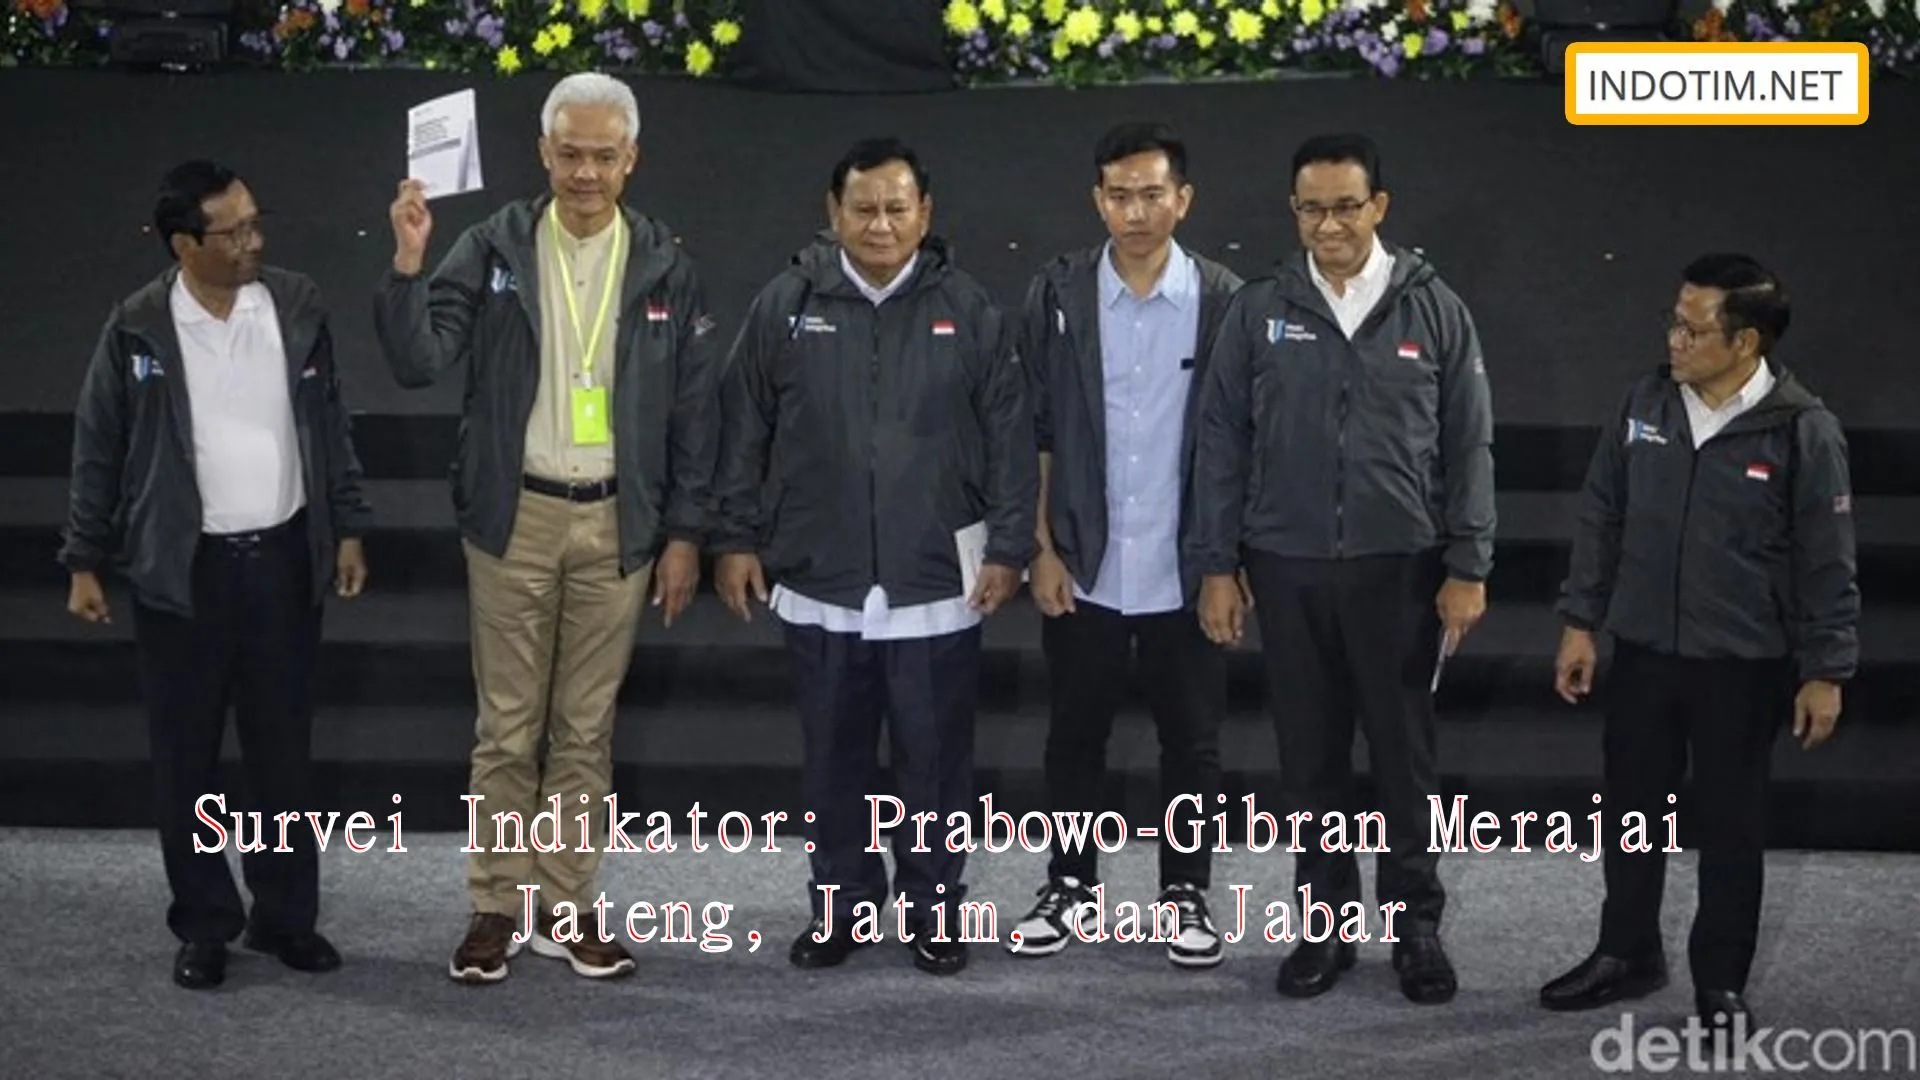 Survei Indikator: Prabowo-Gibran Merajai Jateng, Jatim, dan Jabar